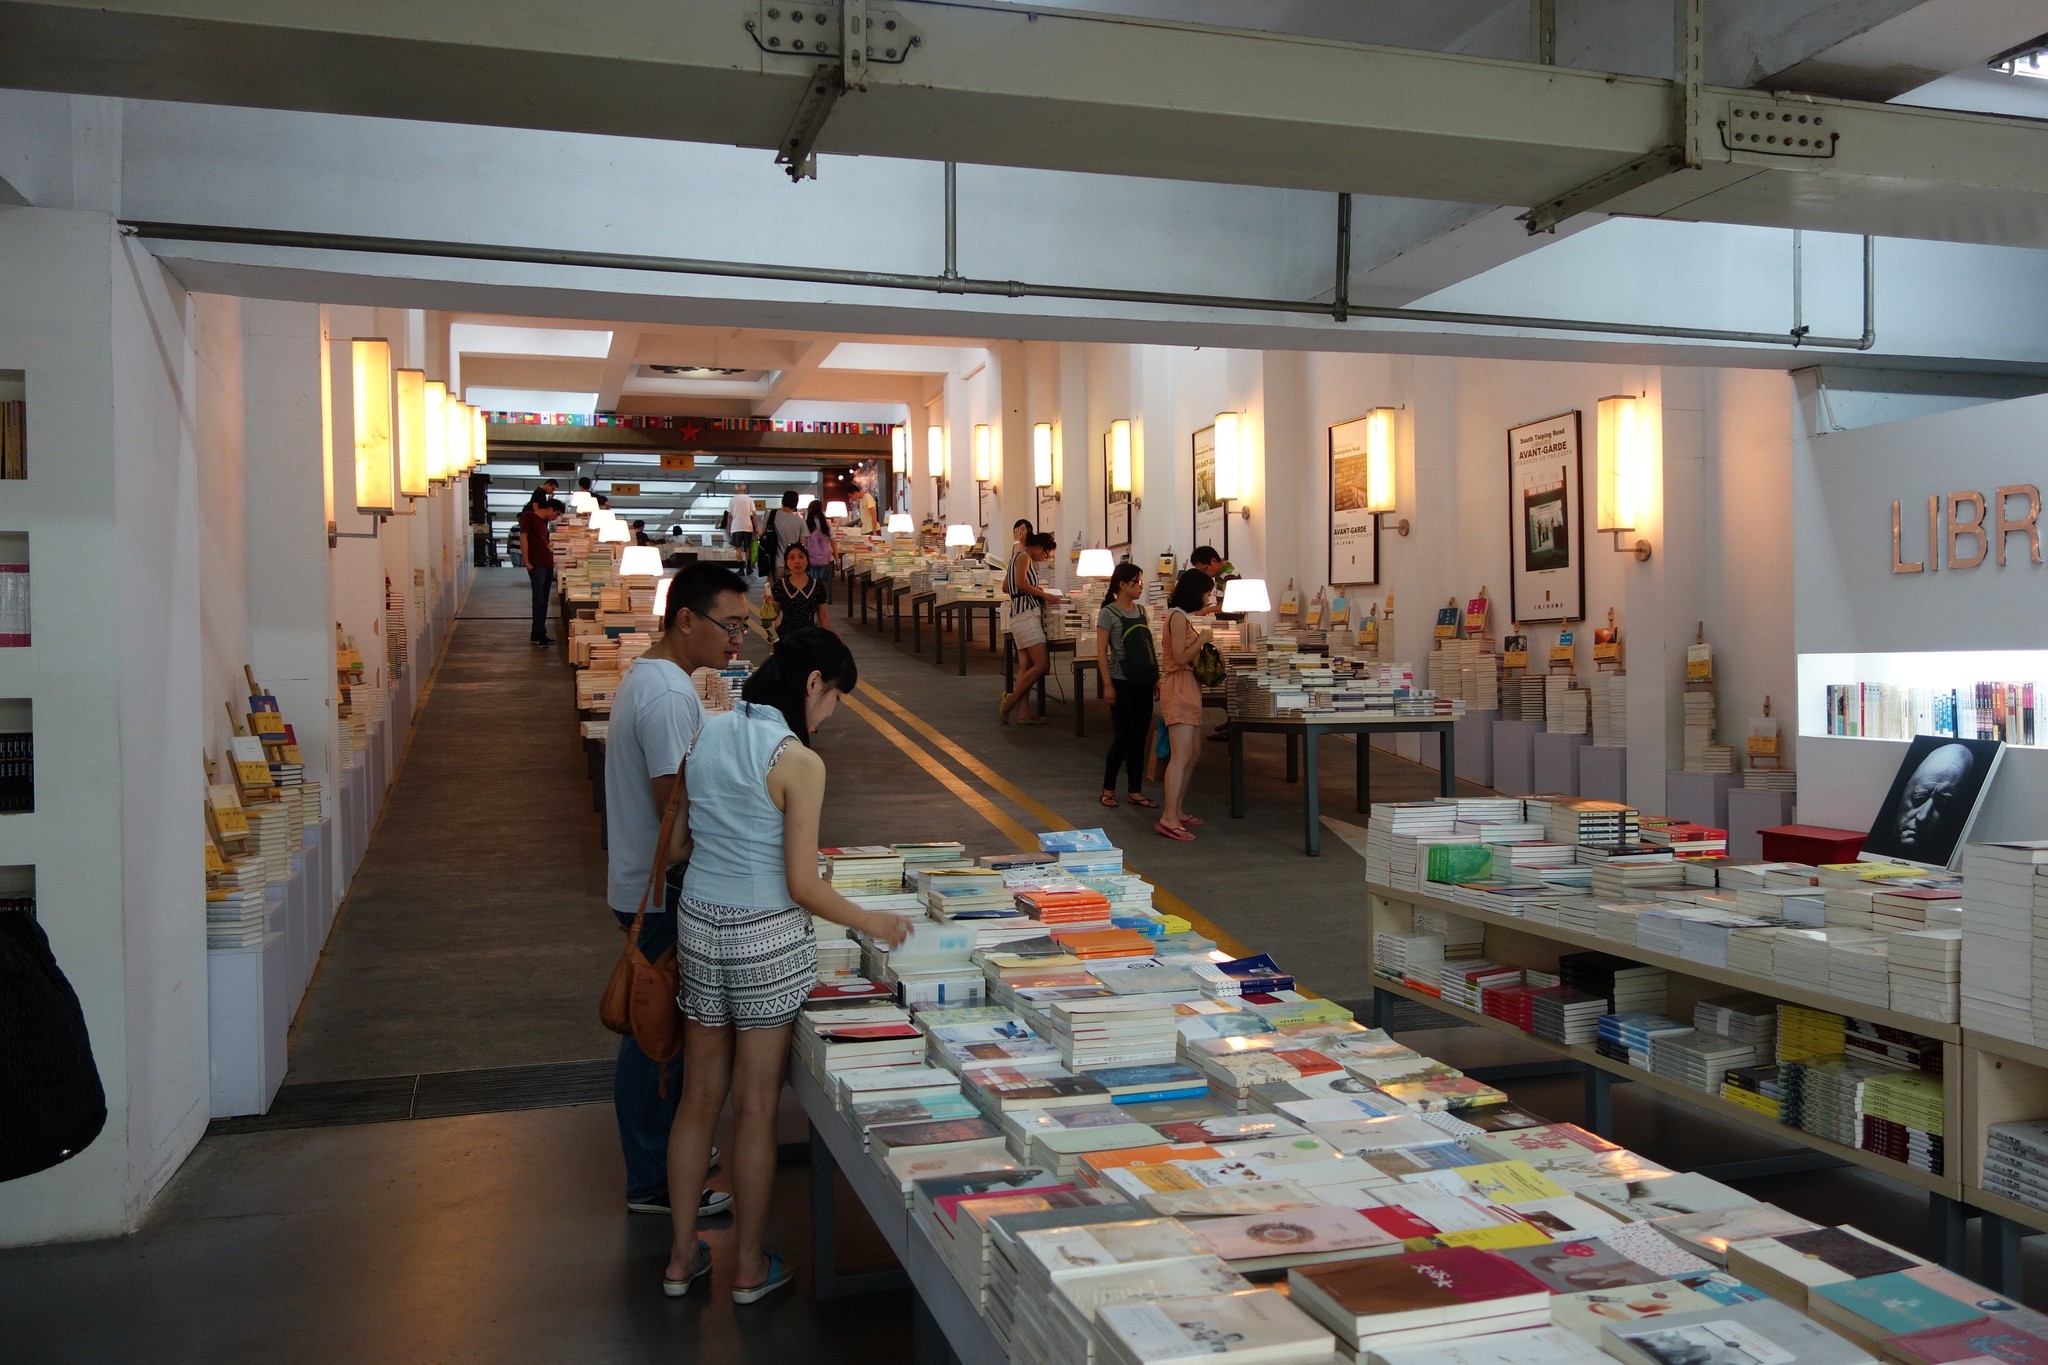 Librairie Avant-Garde - Nanjing, China (Foto: Reprodução)